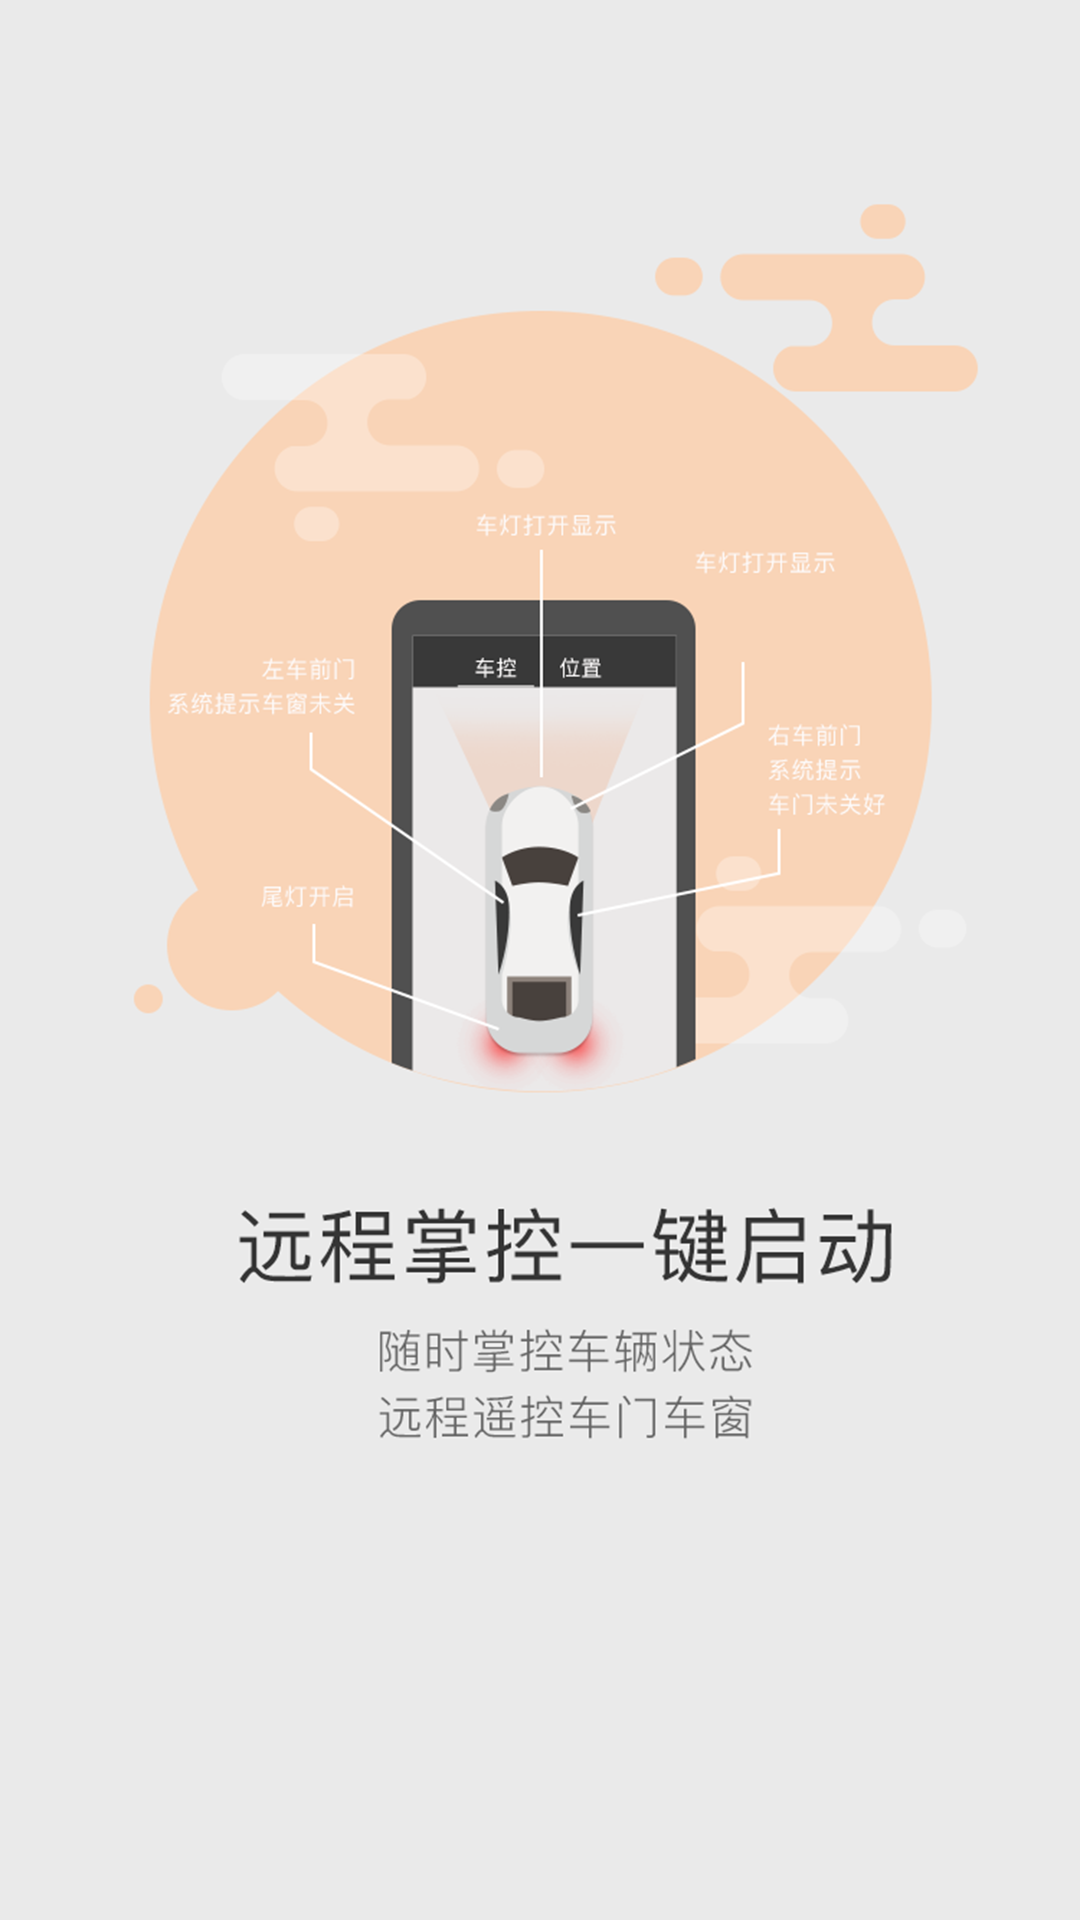 51车联app 5.5.5